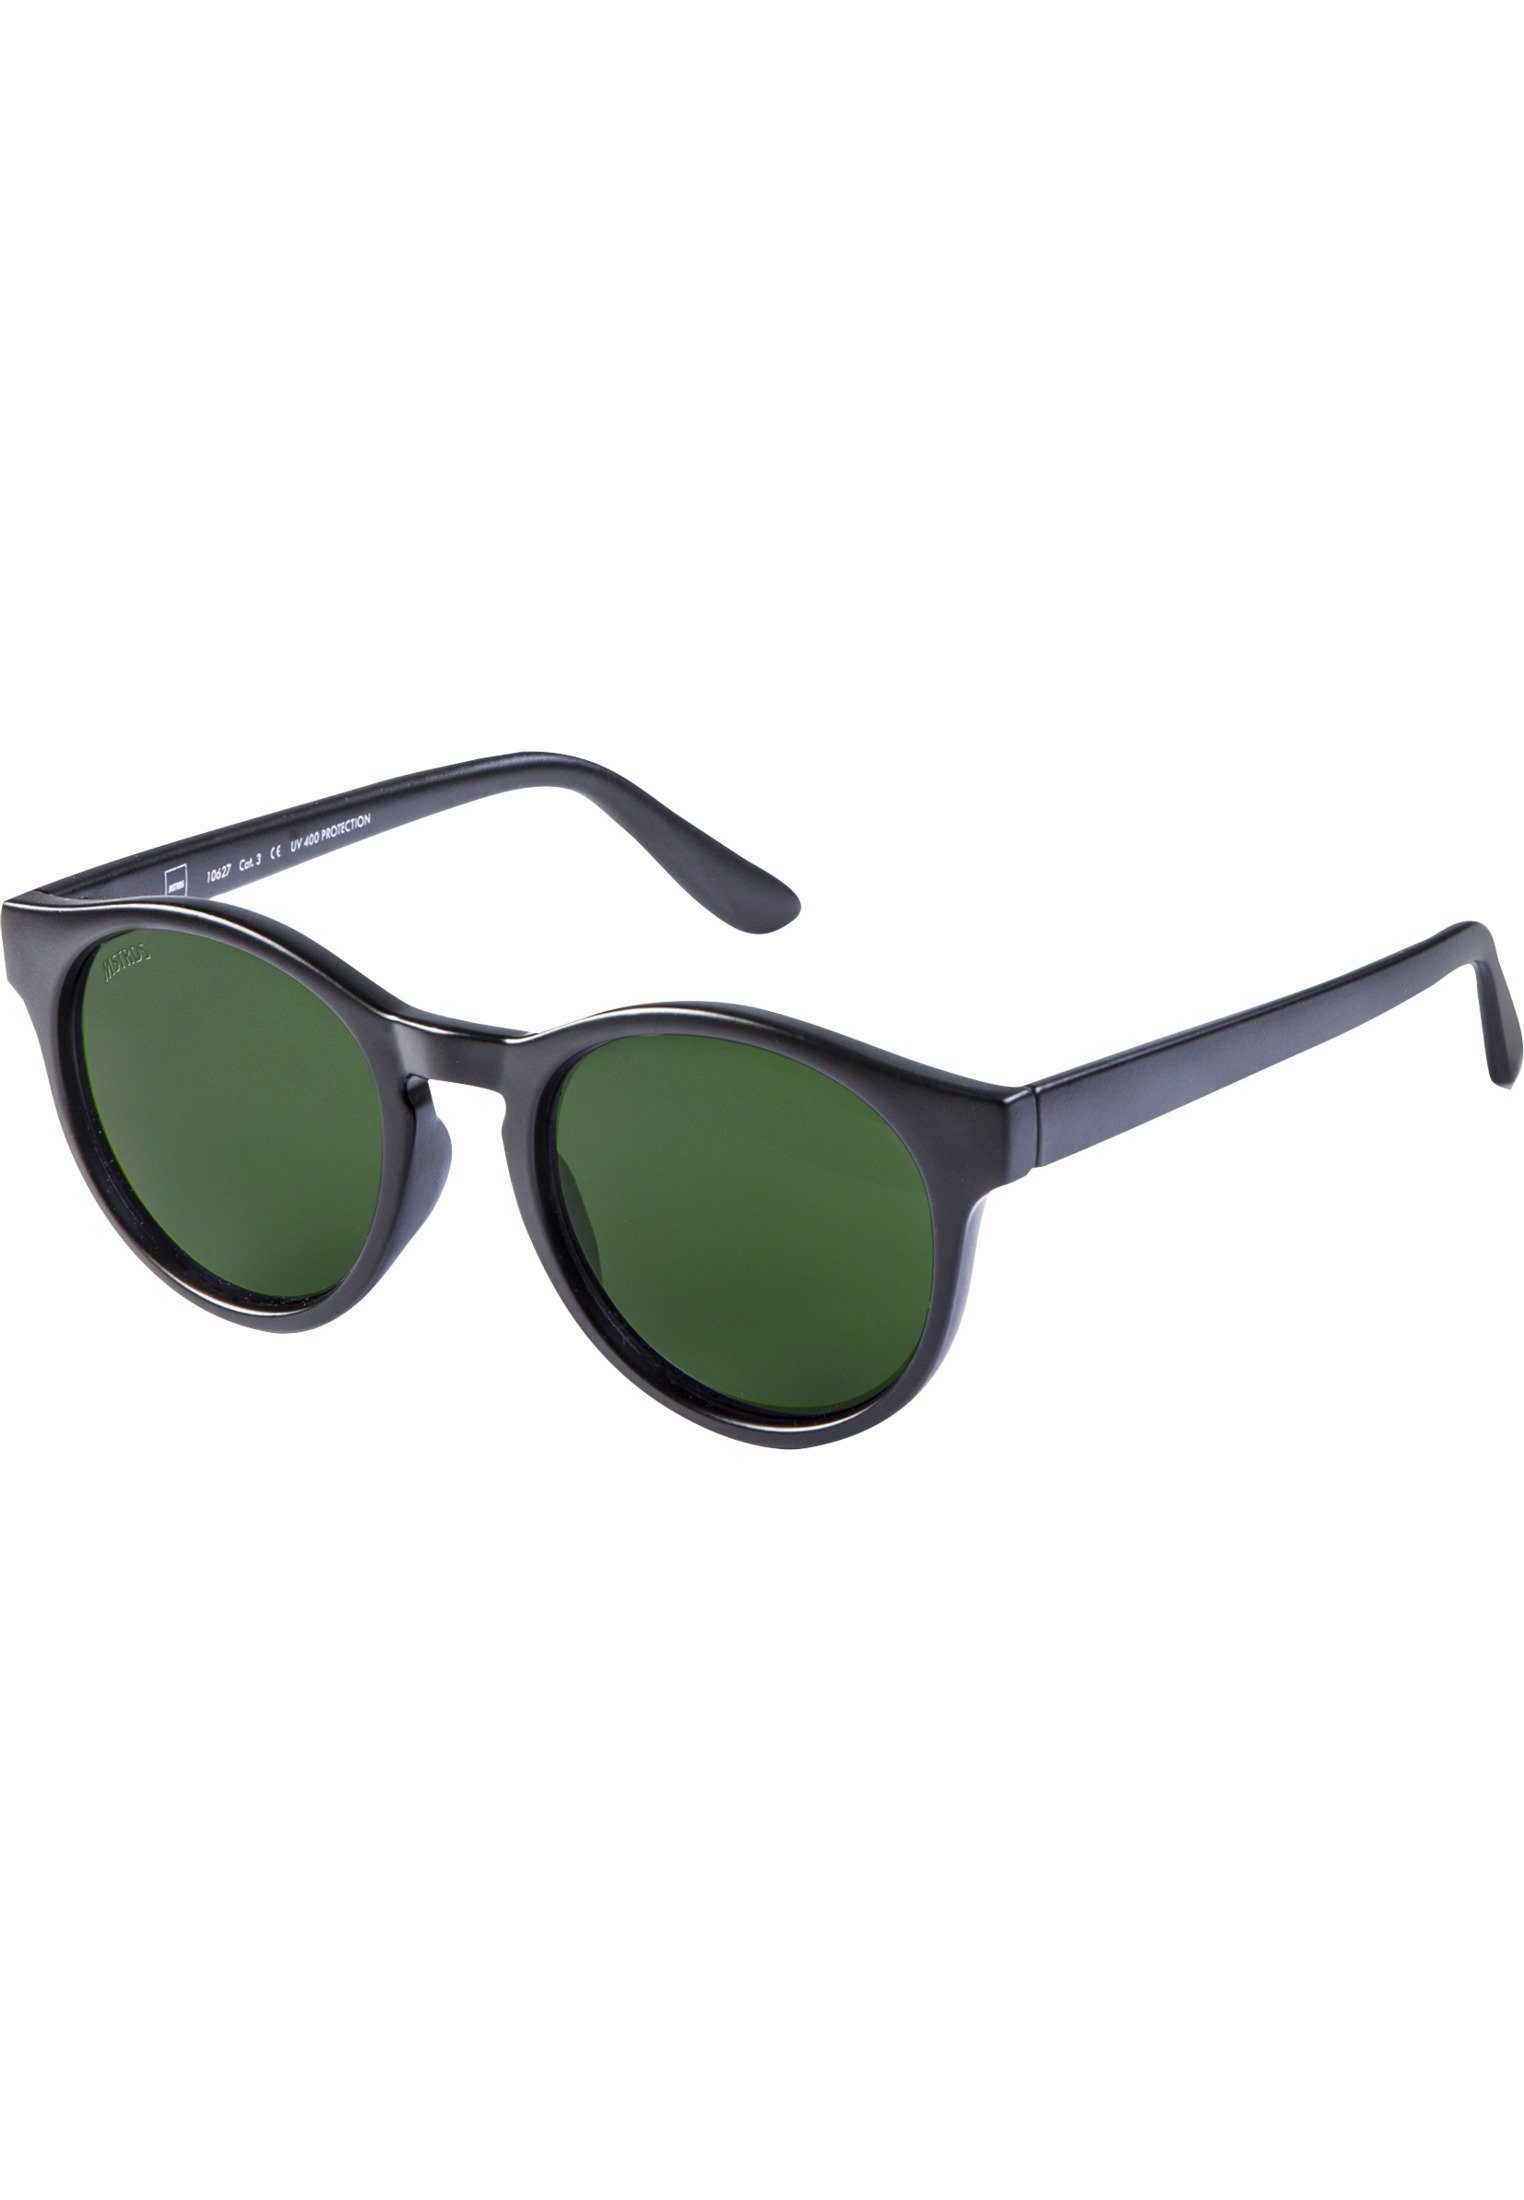 Sunrise Sunglasses blk/grn MSTRDS Sonnenbrille Accessoires